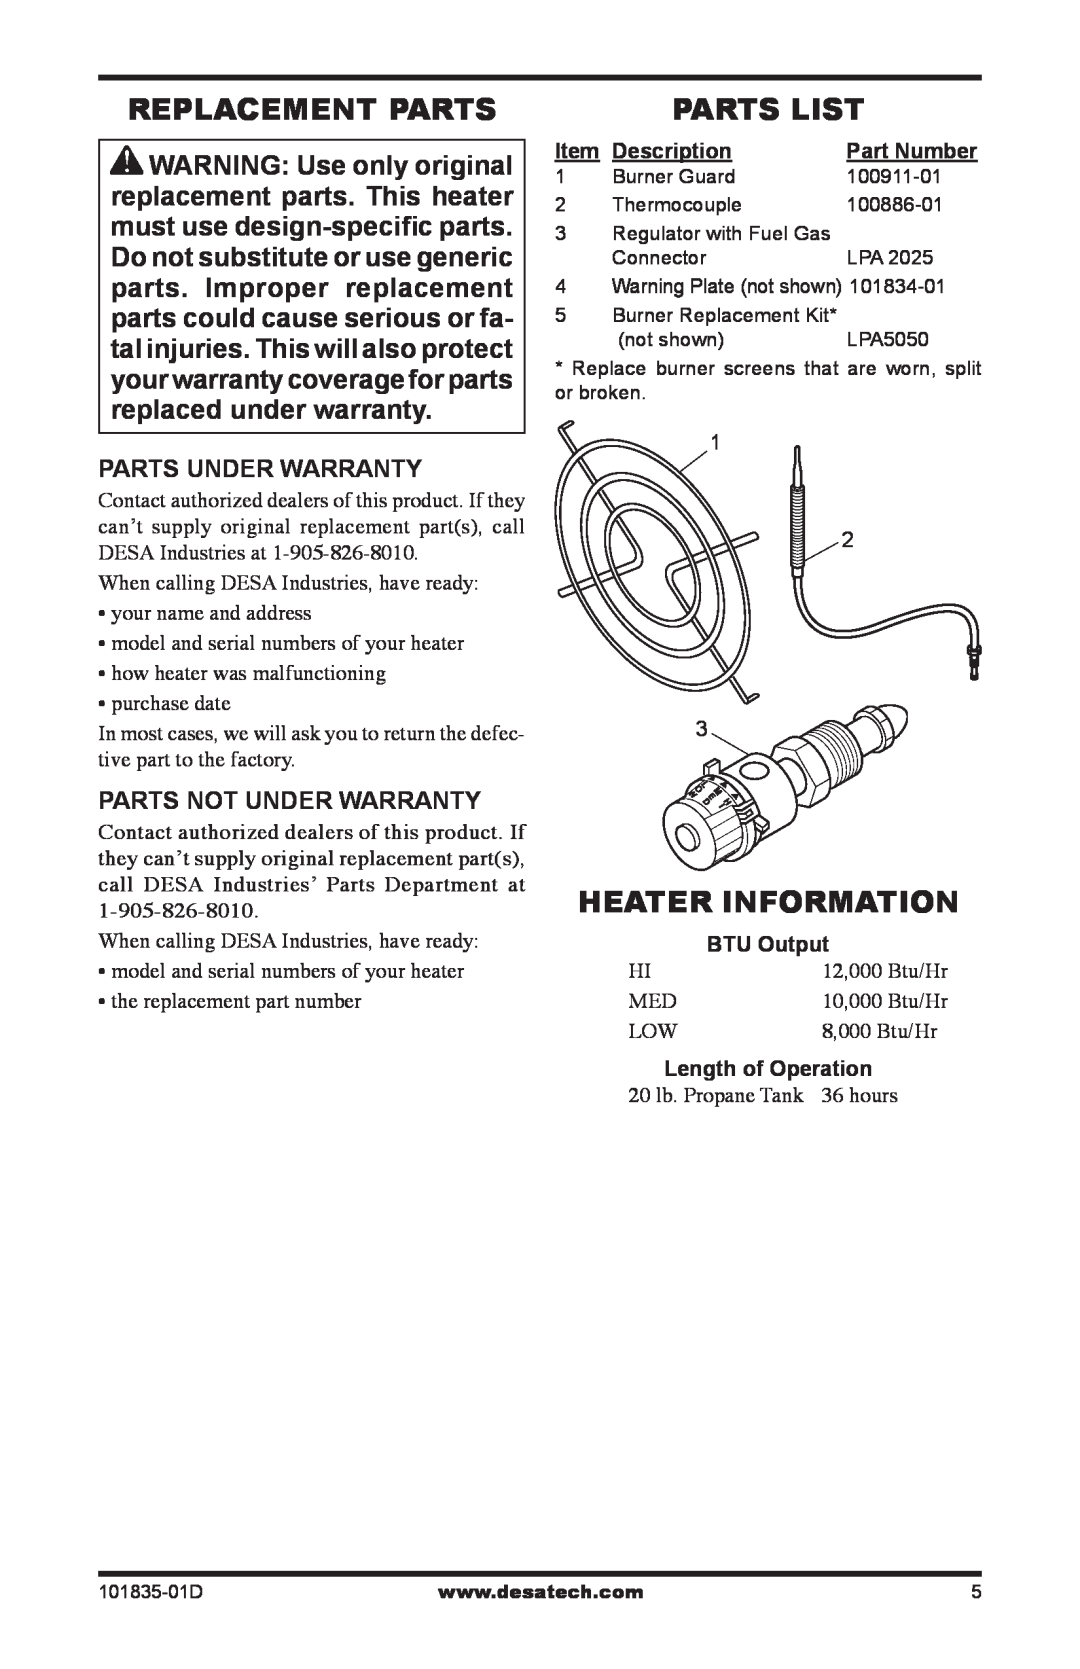 Desa TTC12B Replacement Parts, Parts List, Heater Information, Parts Under Warranty, Parts Not Under Warranty, Description 